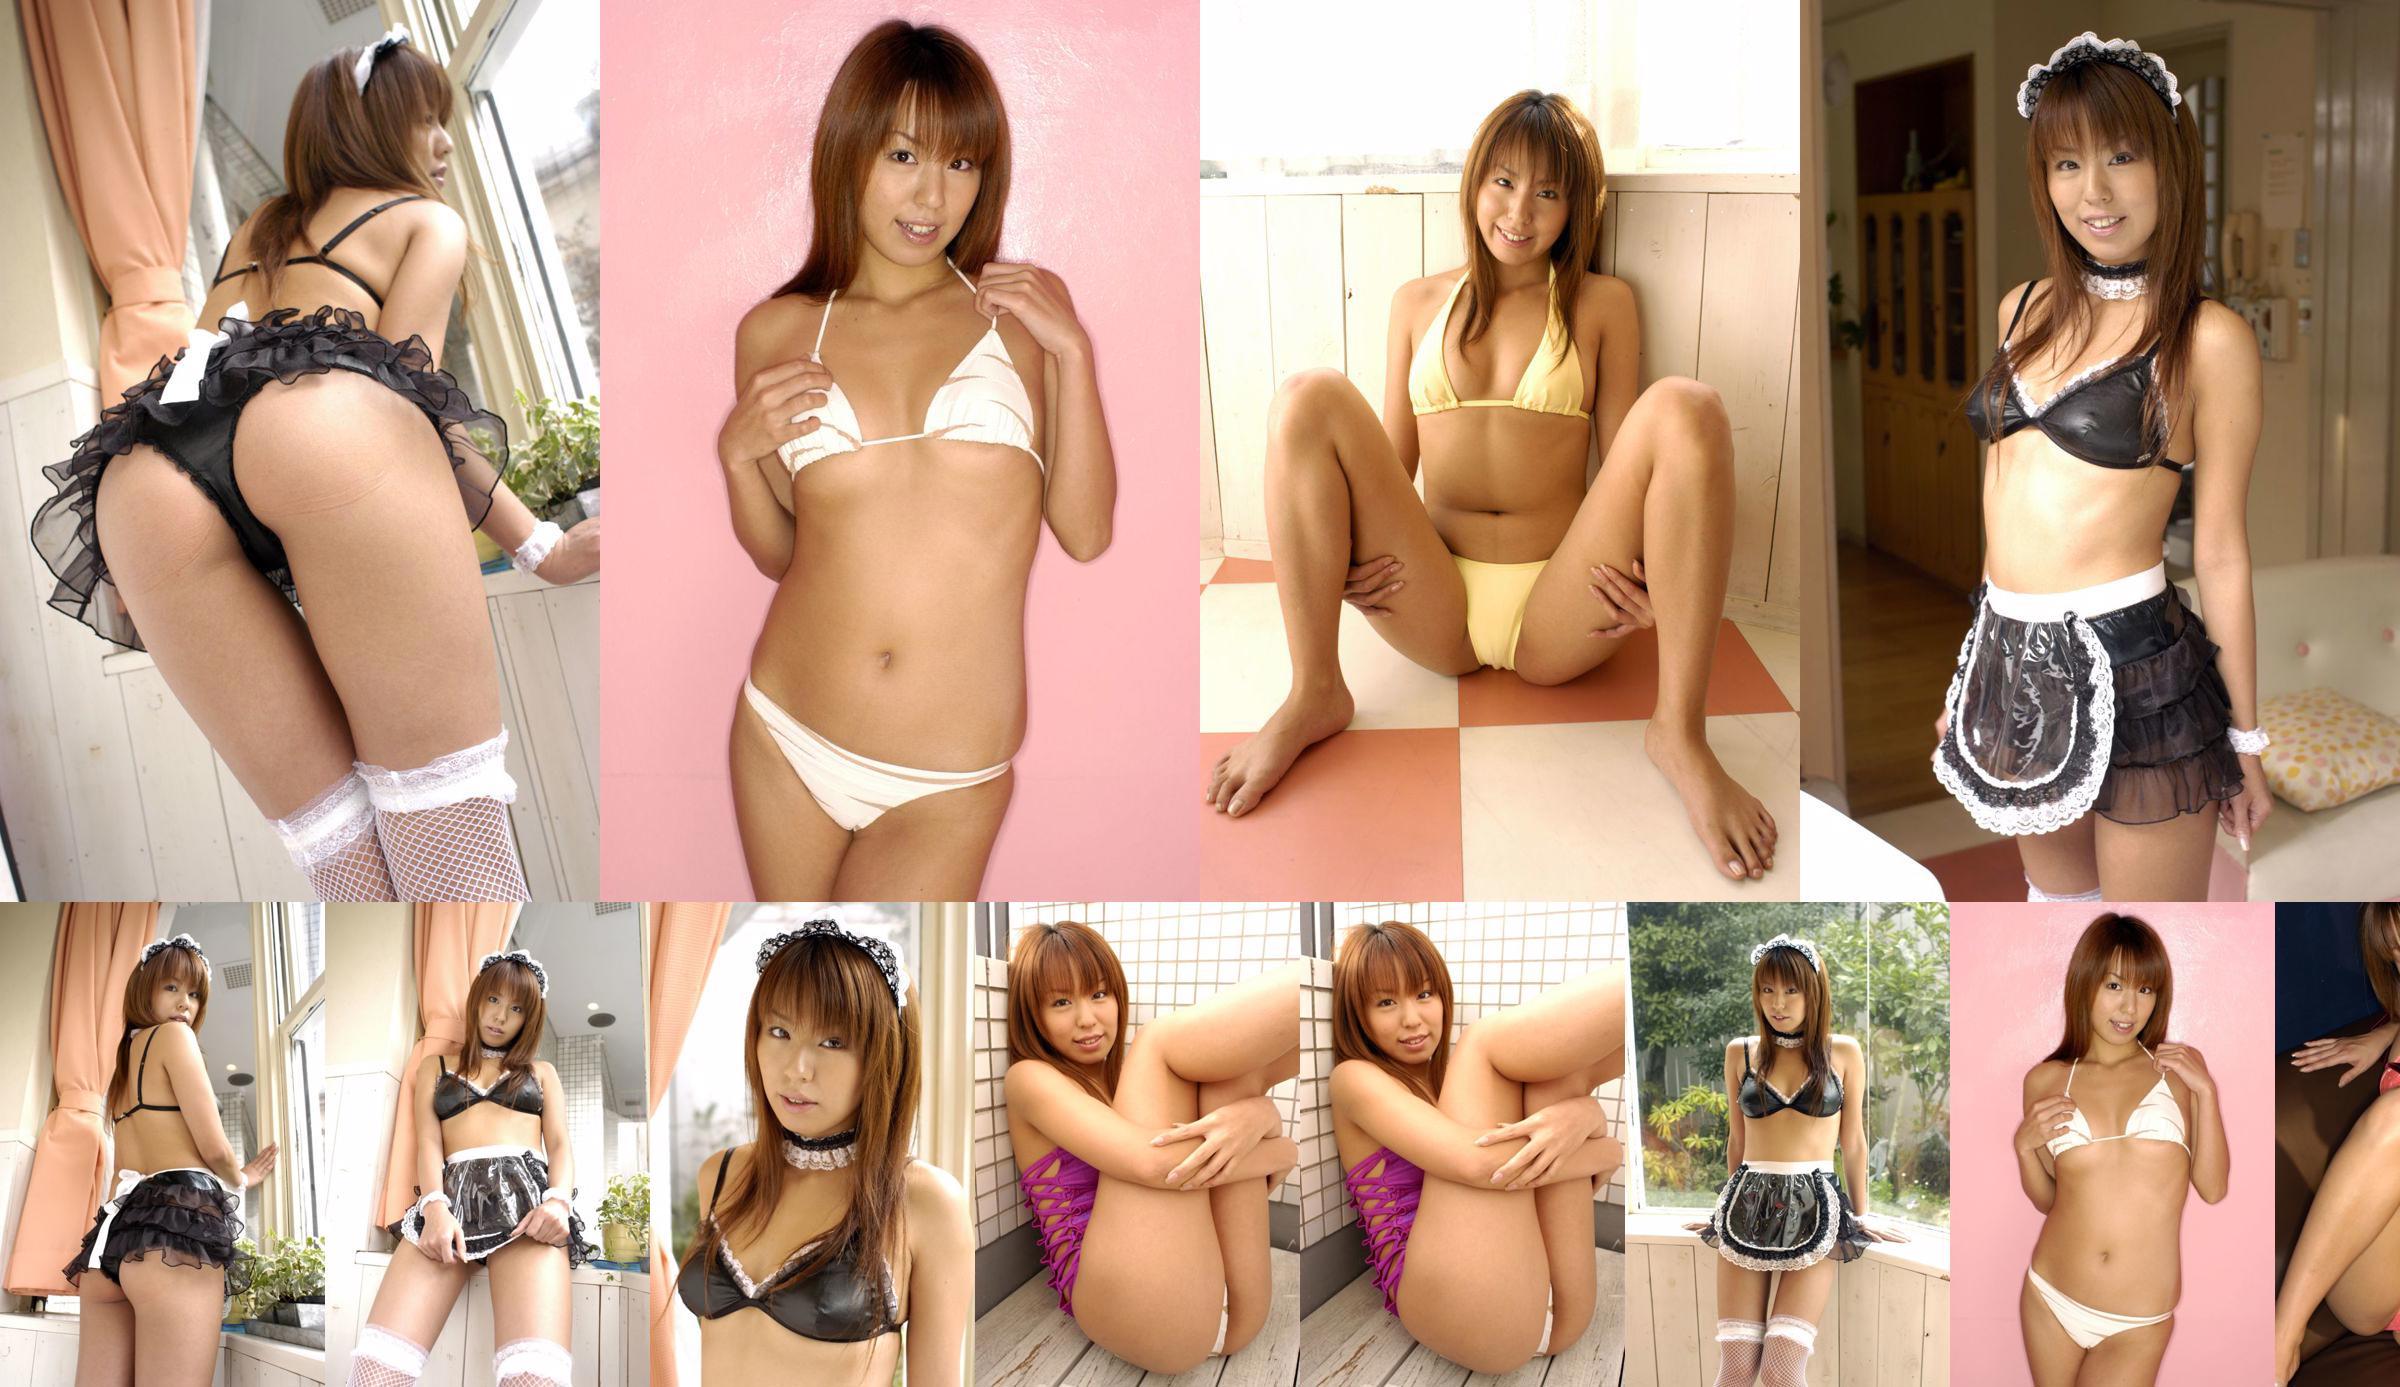 [LOVEPOP] 逢沢りいな Riina Aizawa Photoset 04 No.de453d Page 2